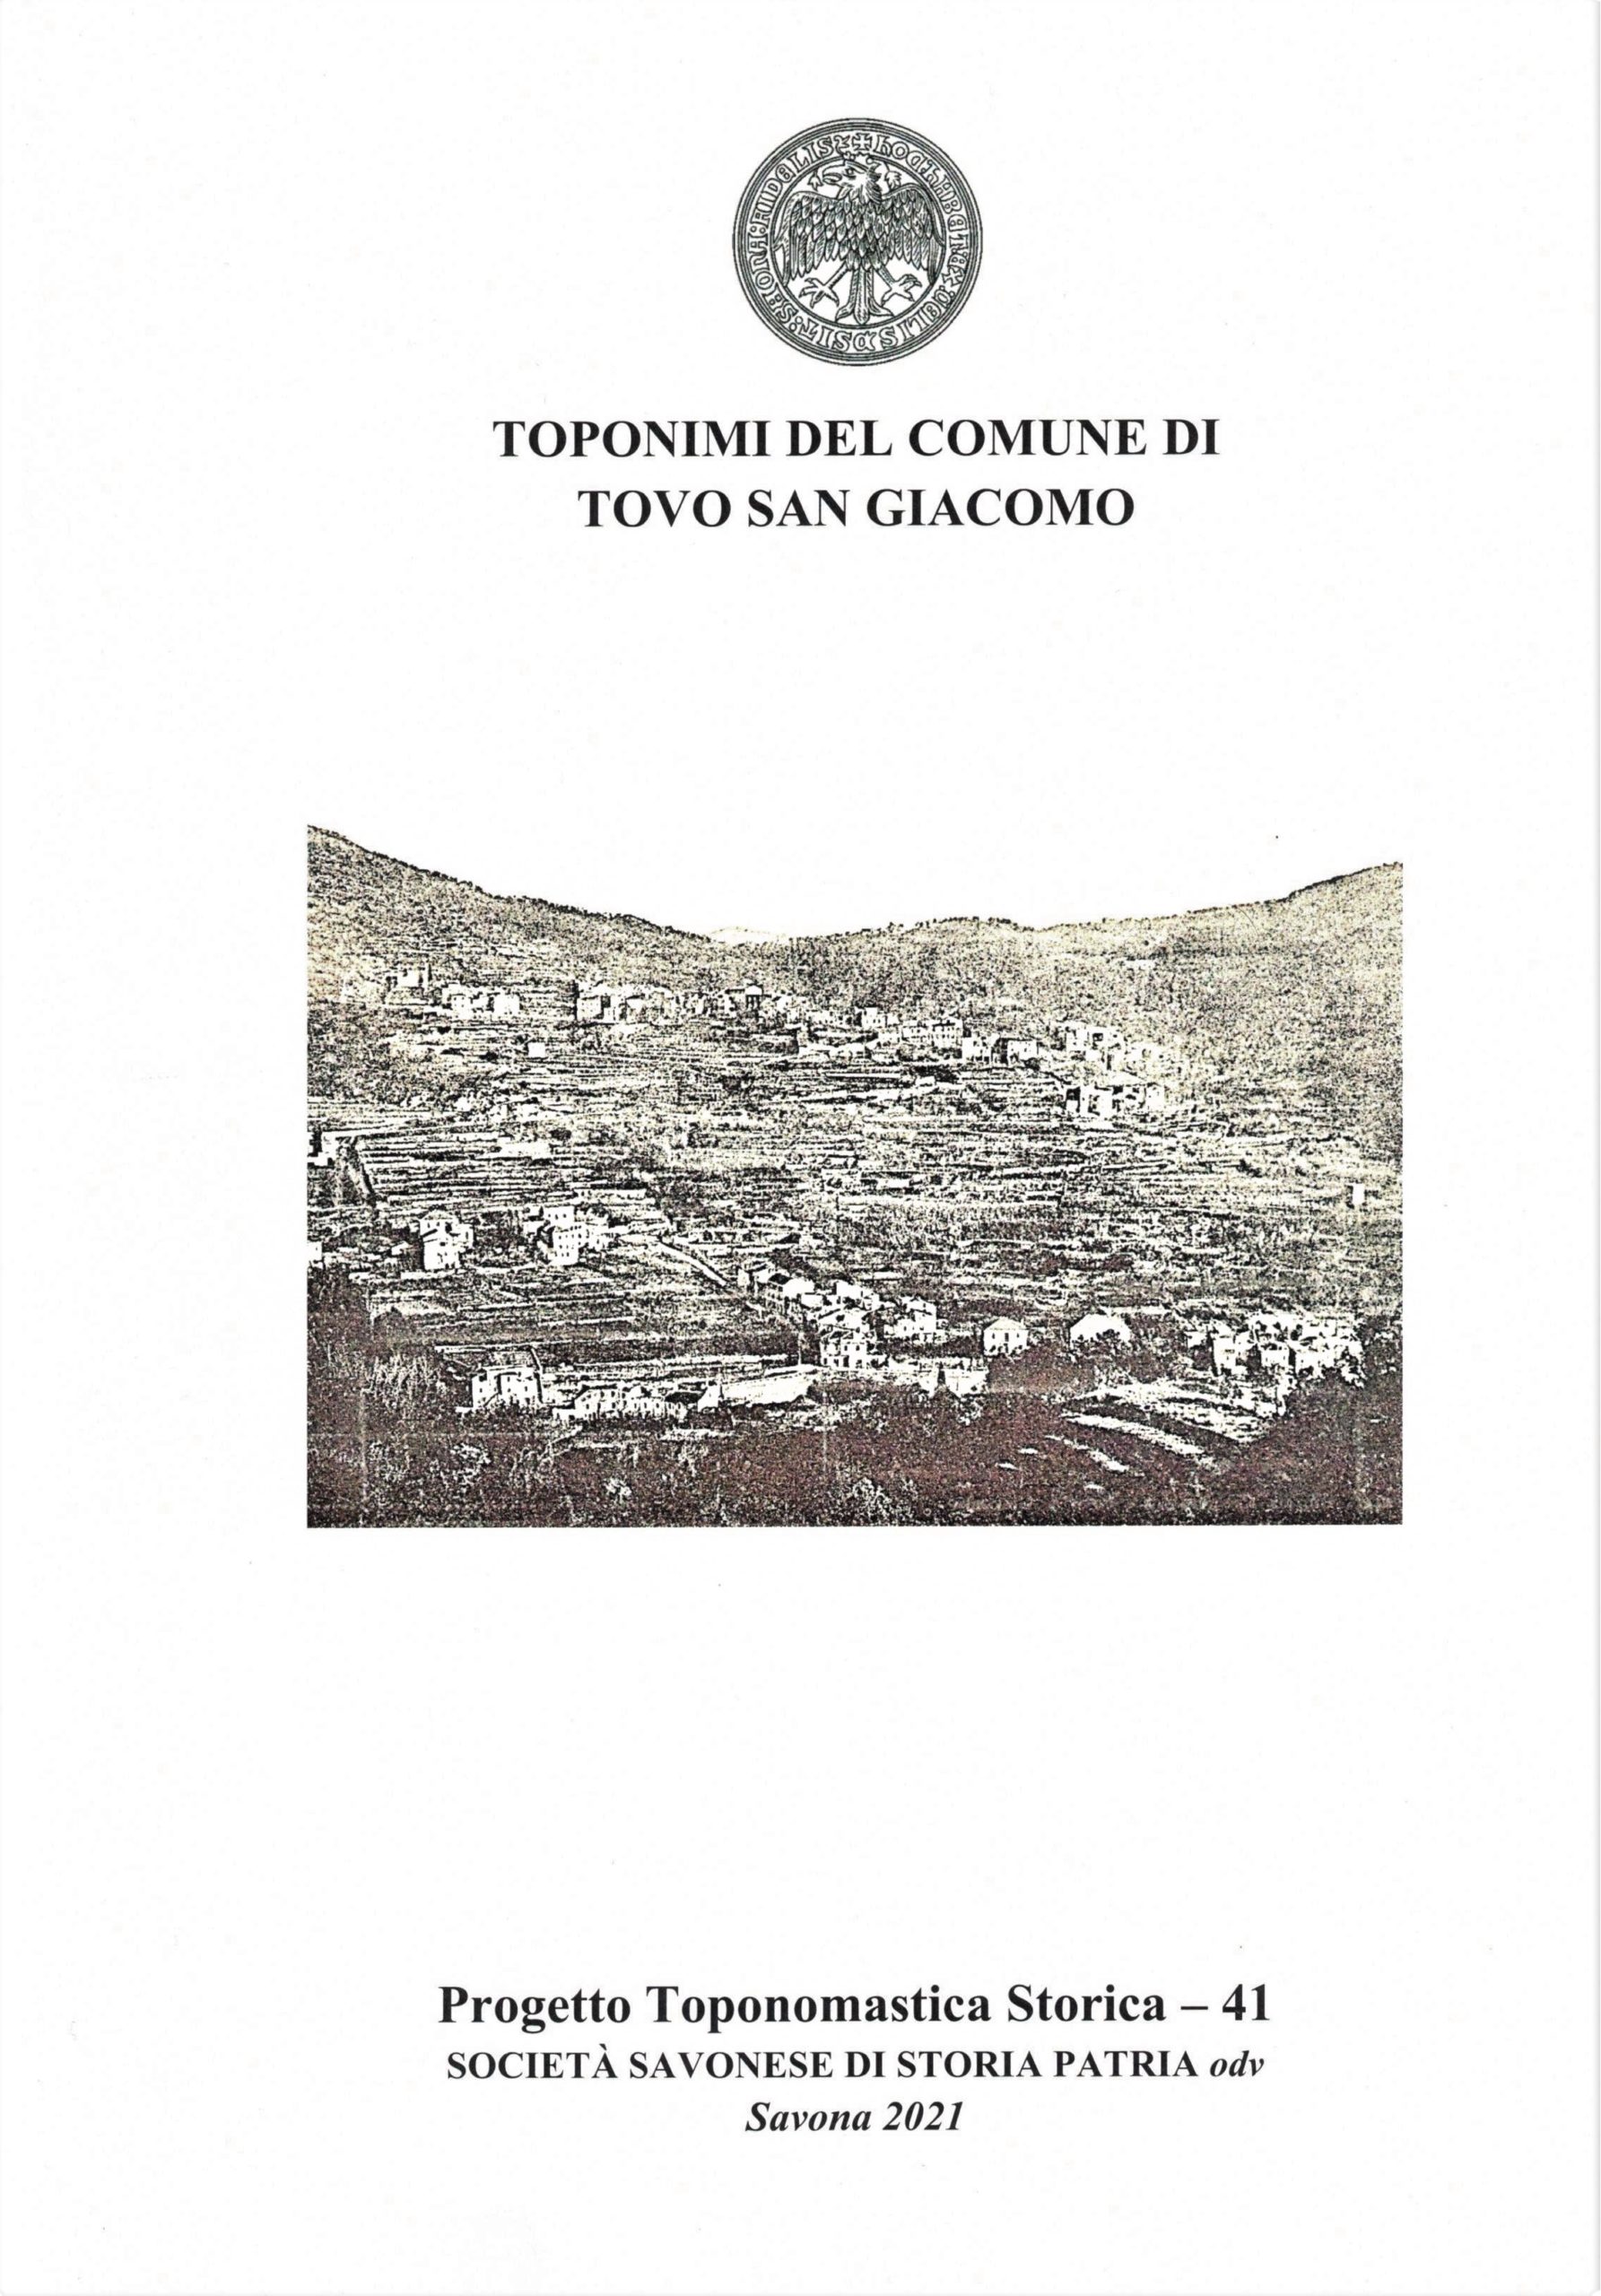 Tovo San Giacomo, fascicolo di toponomastica, F. Ciciliot, 18 gennaio 2023